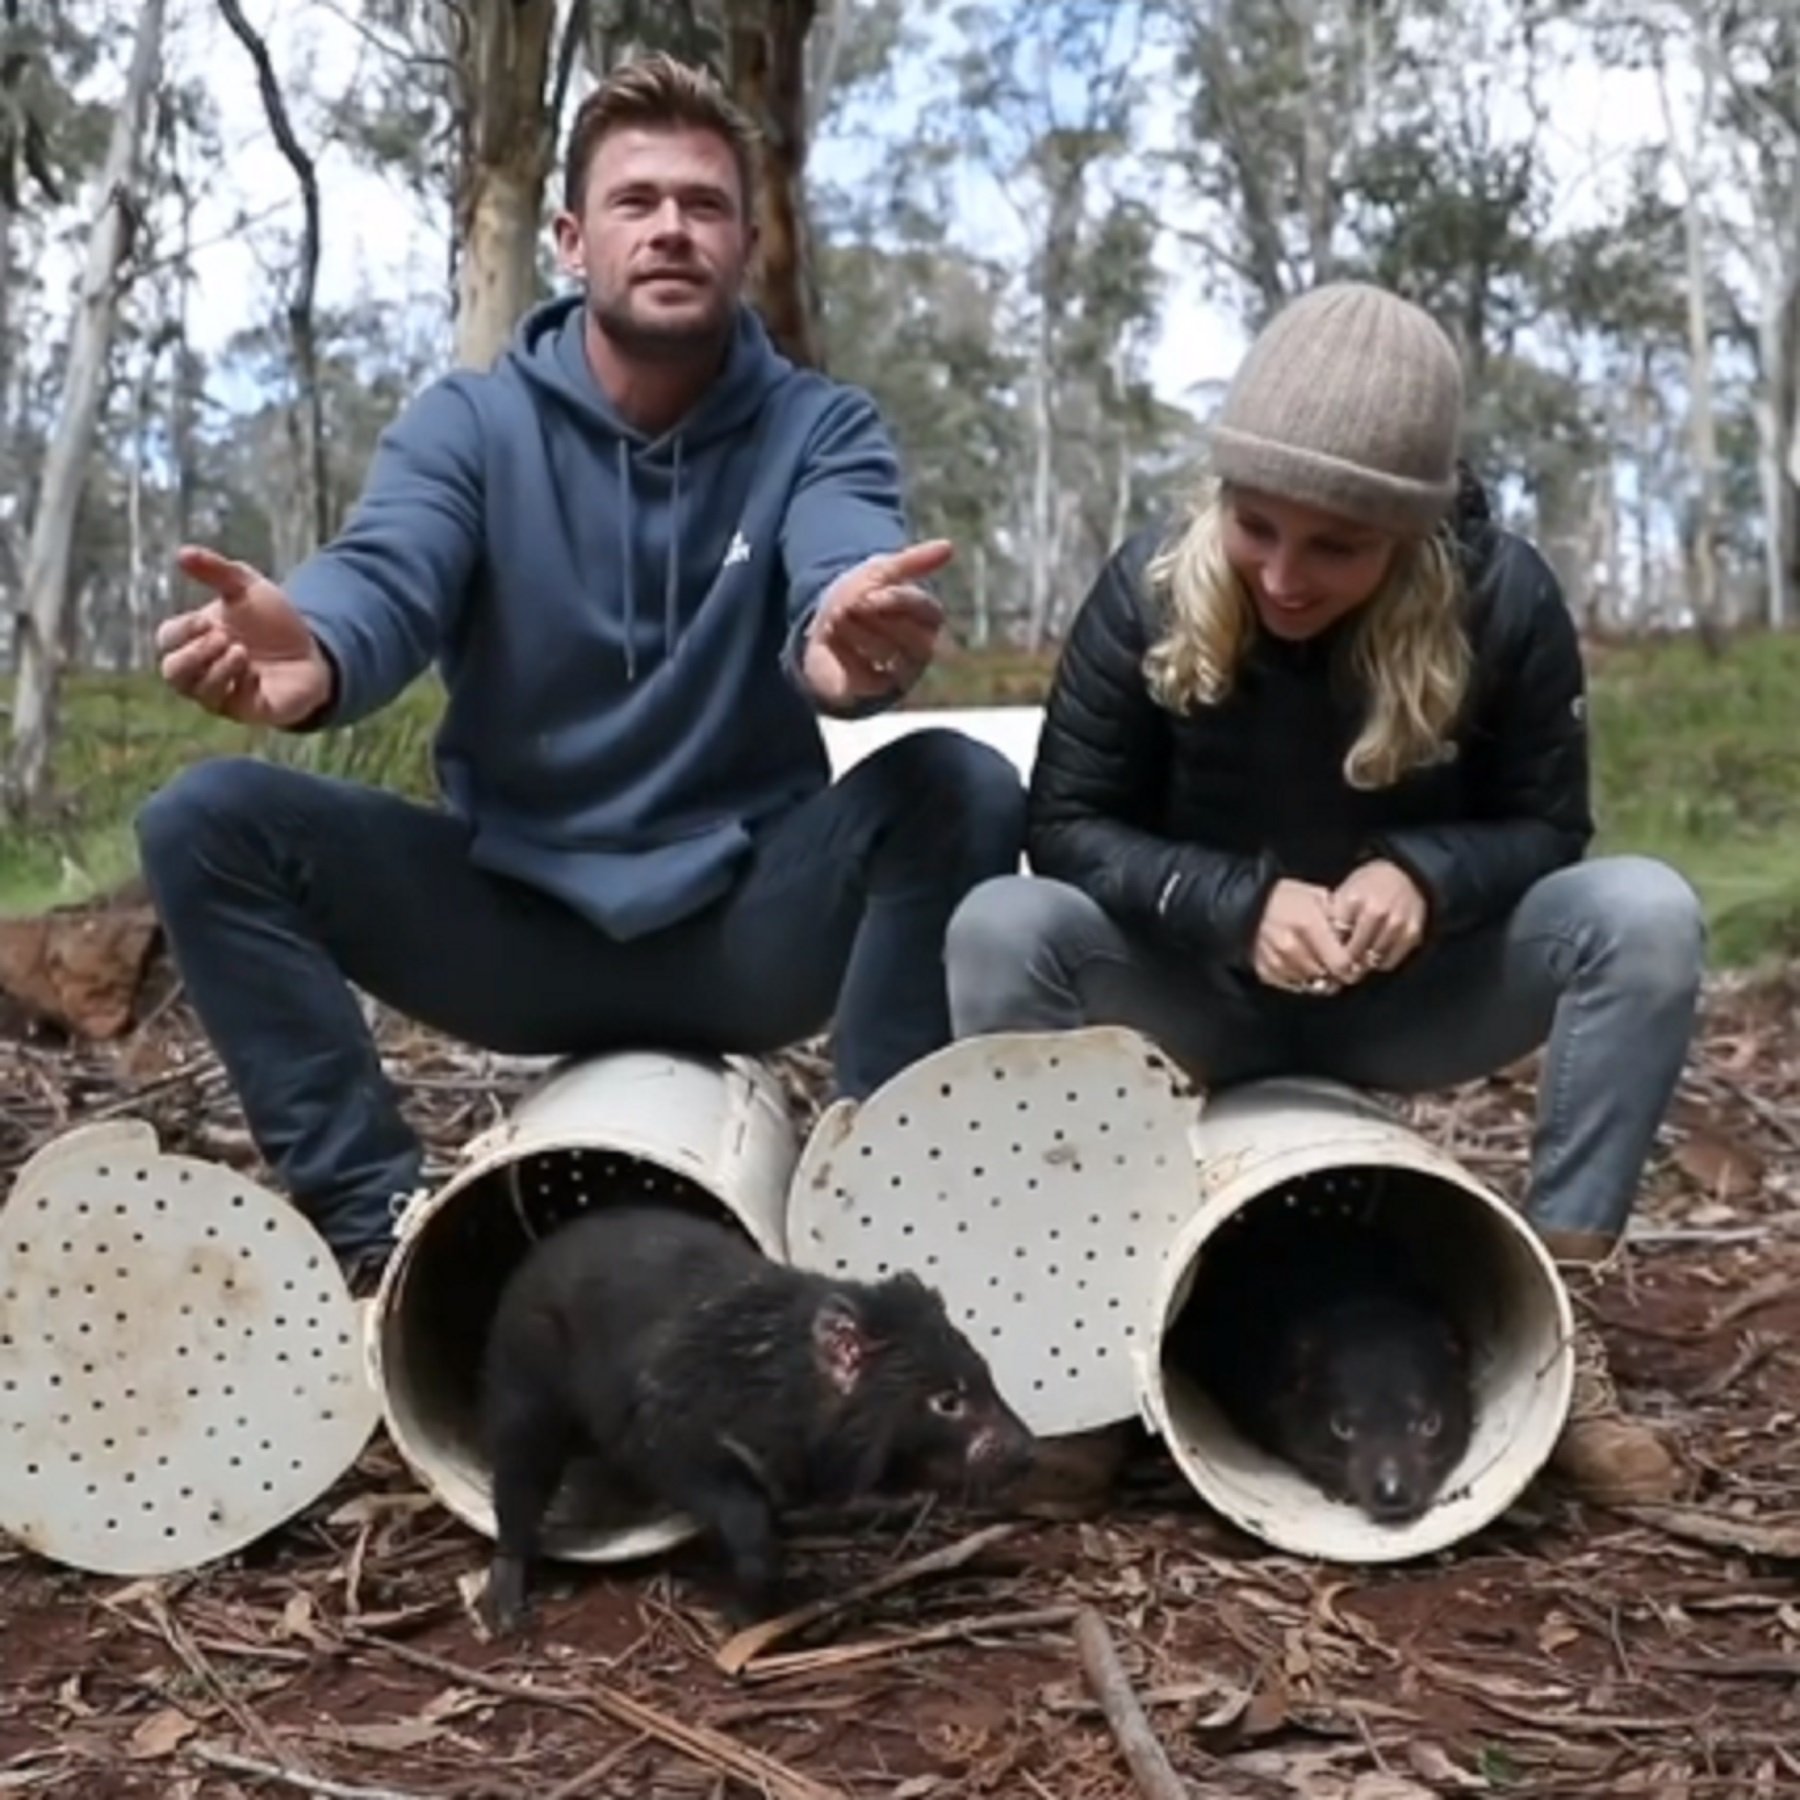 Gesto animalista de Pataky y Hemsworth reintroduciendo especies en Australia